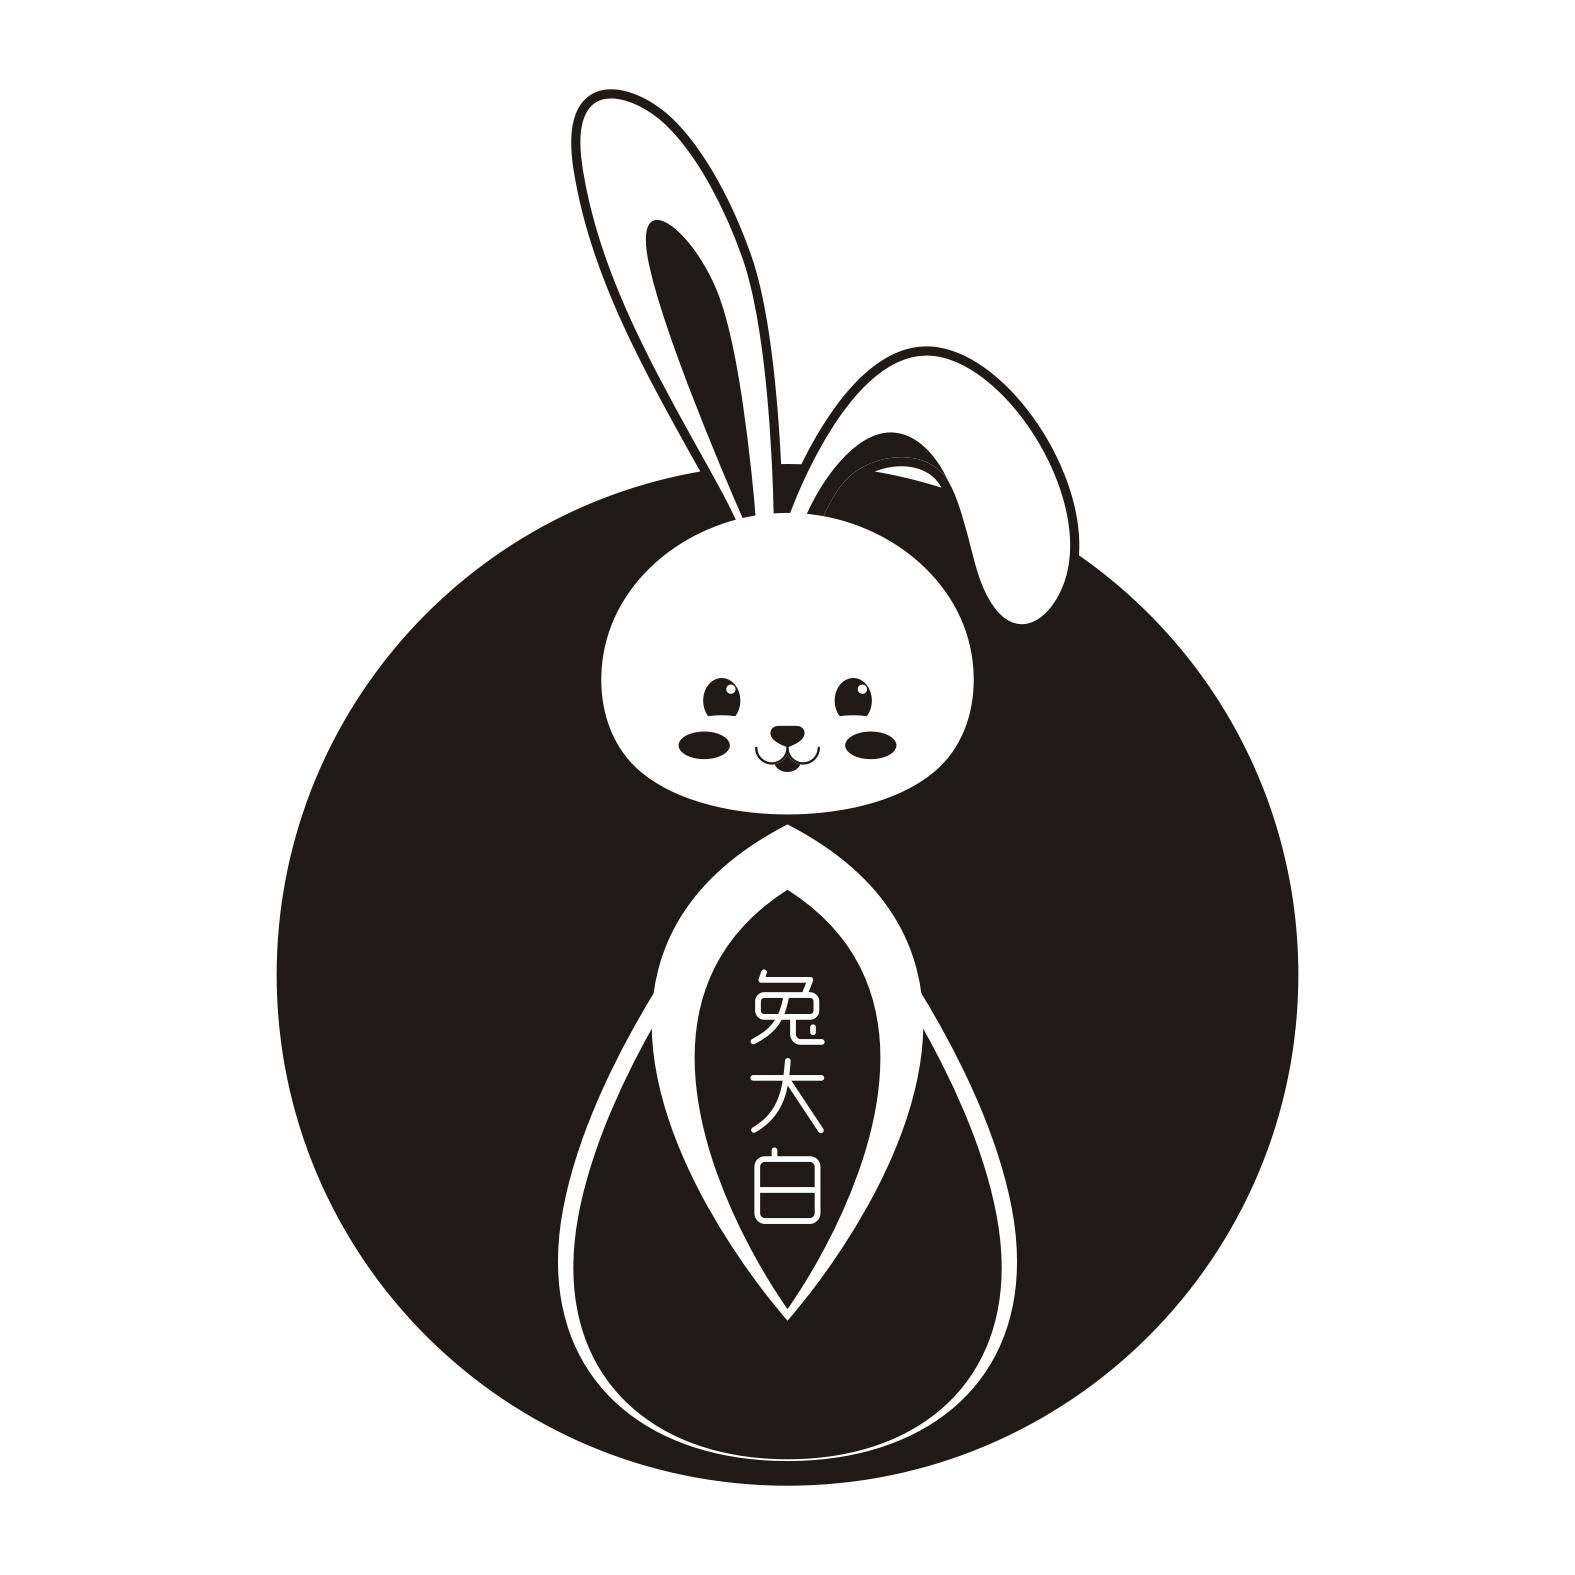 商标文字兔大白商标注册号 46487411,商标申请人重庆兔大白生物技术